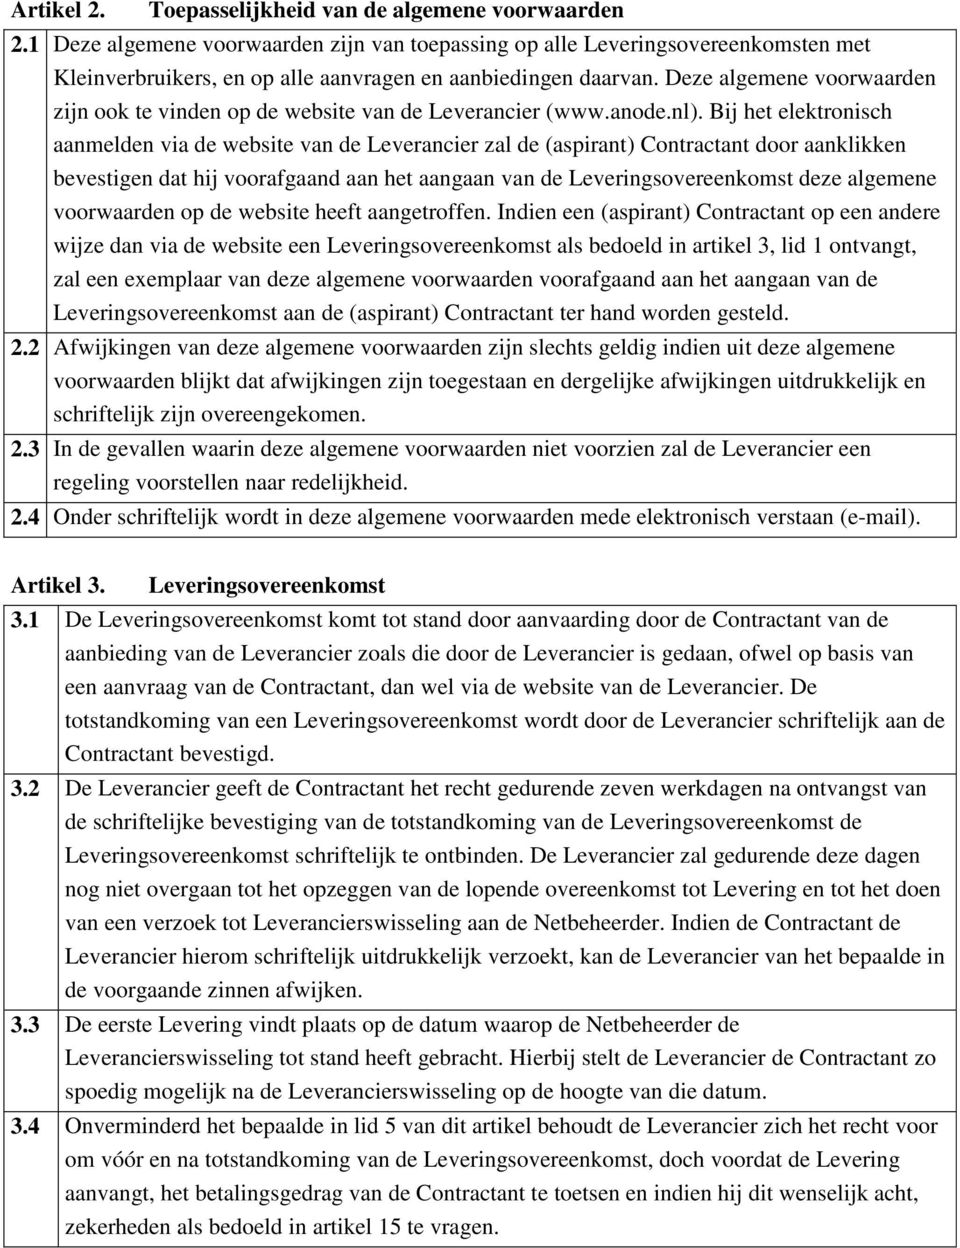 Deze algemene voorwaarden zijn ook te vinden op de website van de Leverancier (www.anode.nl).